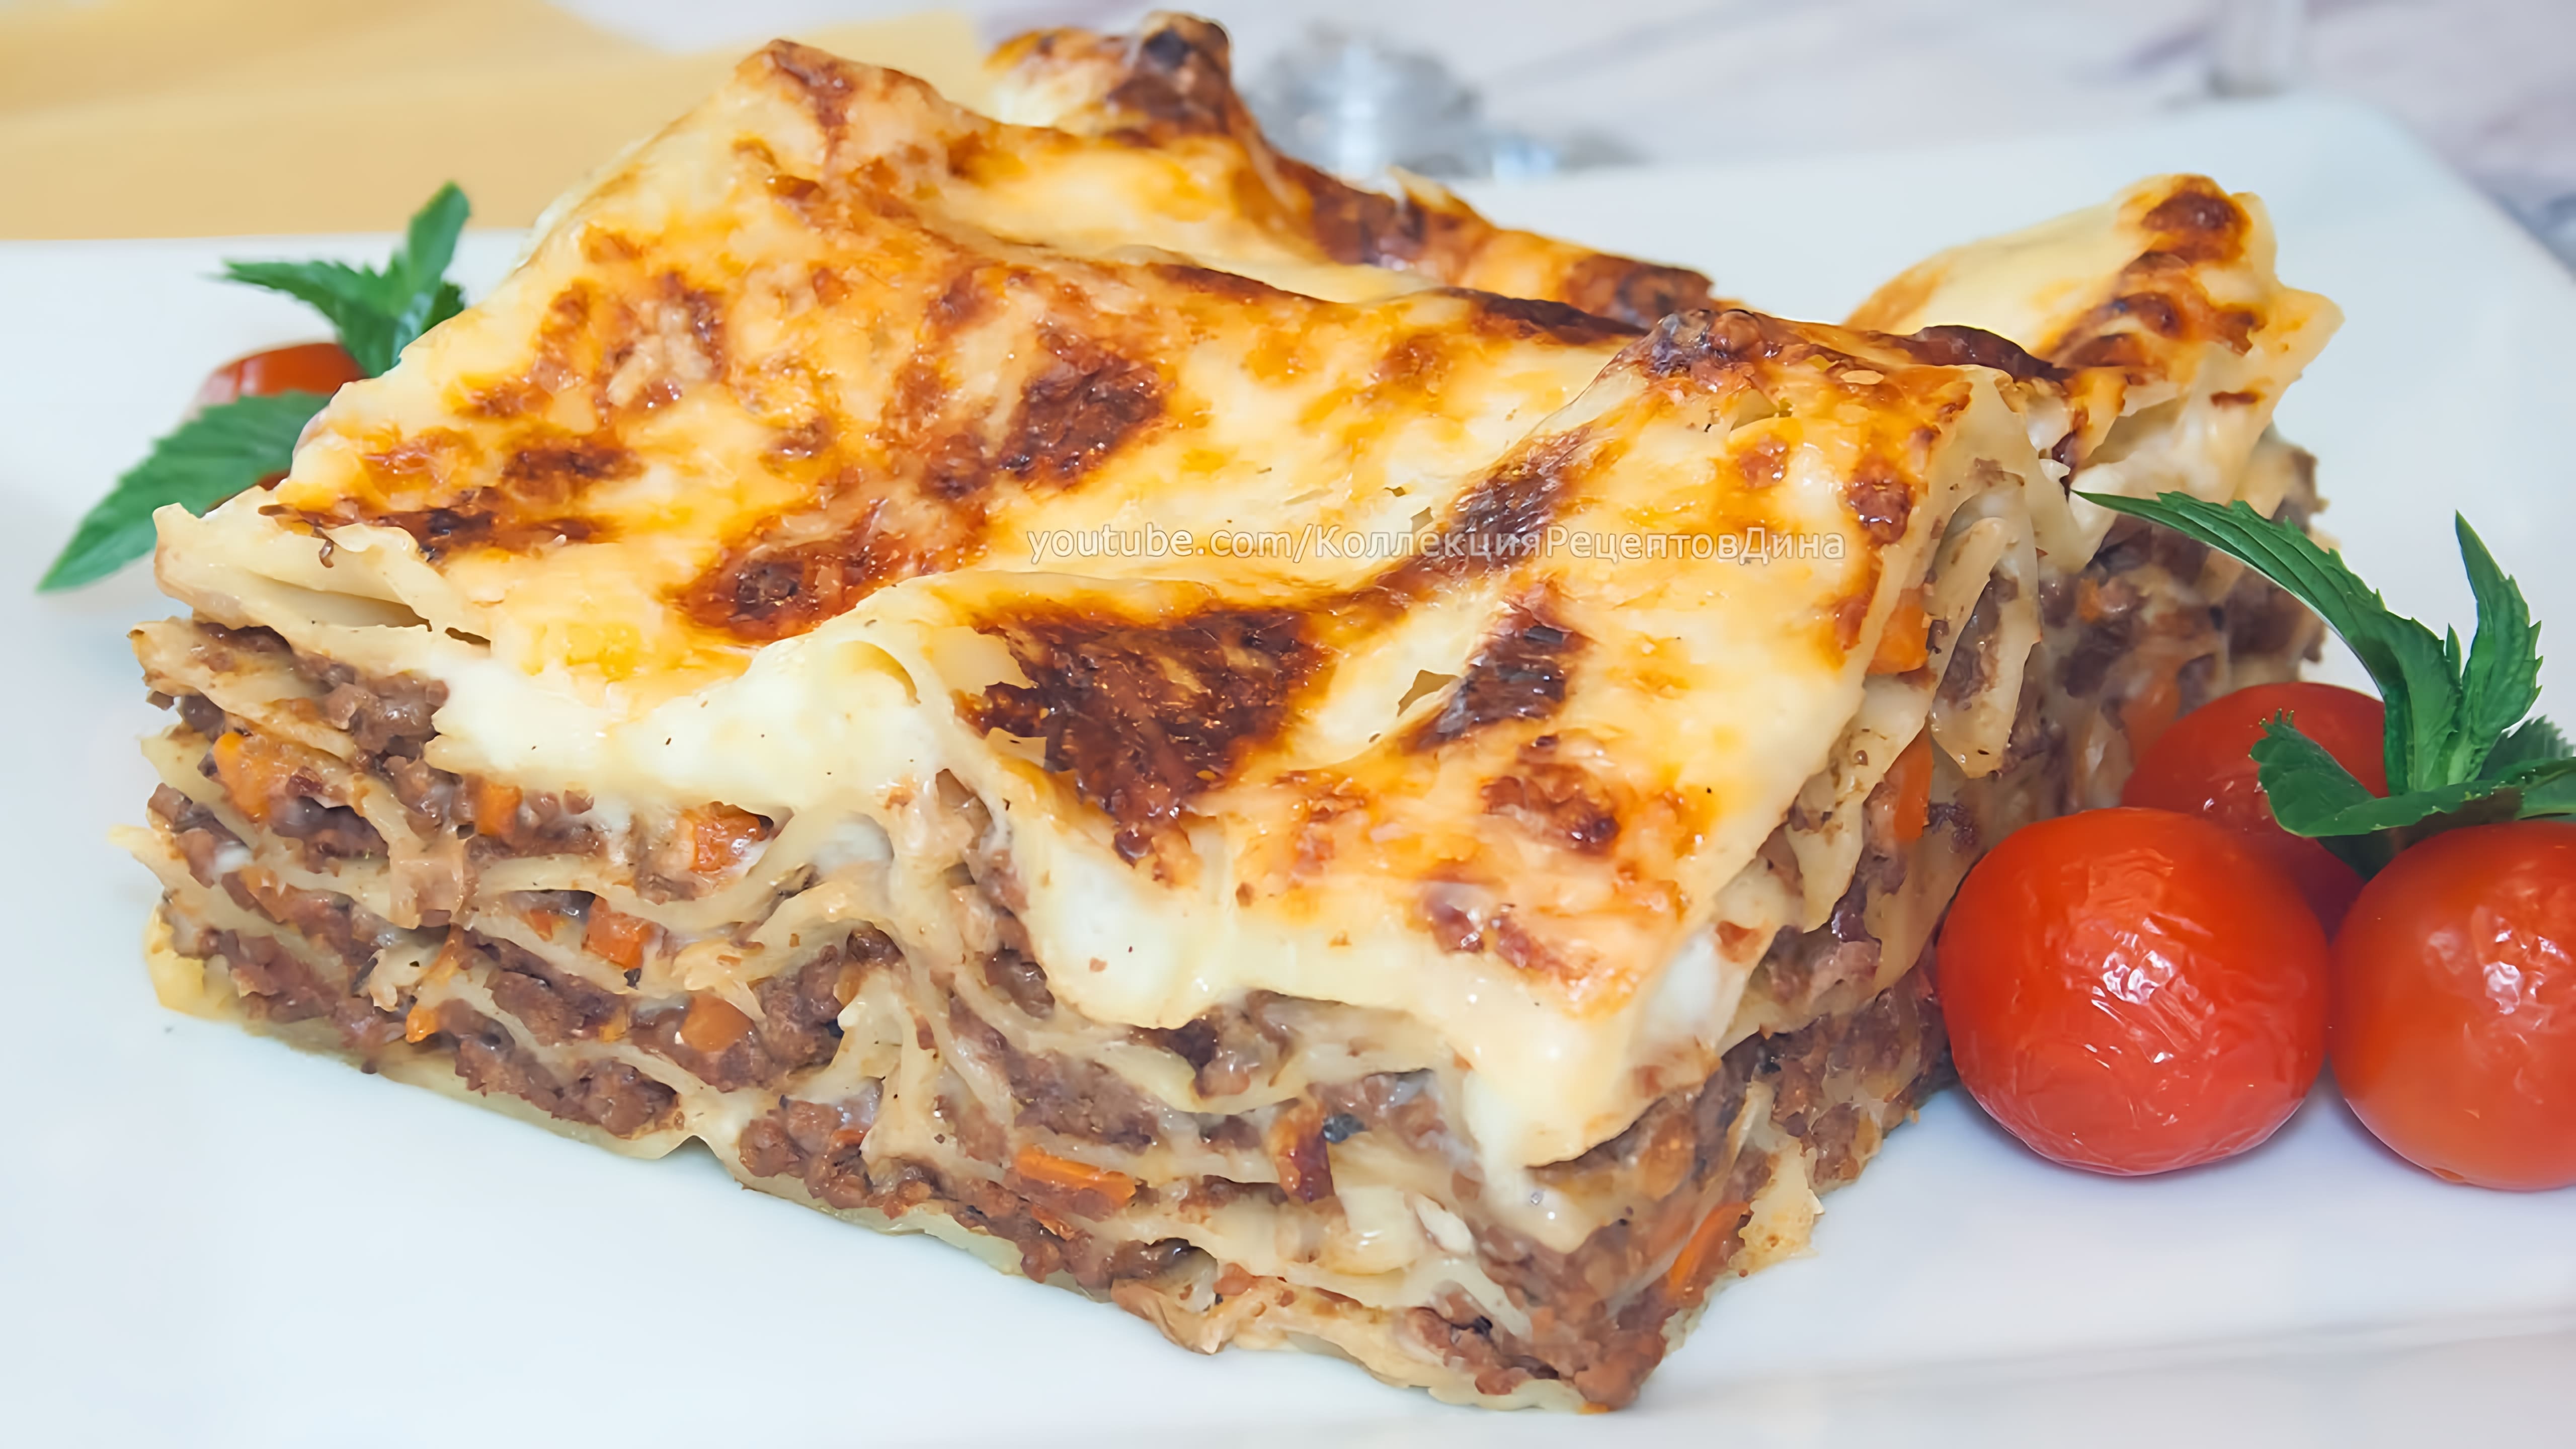 Видео: Лазанья с соусом Бешамель и Болоньезе, рецепт очень вкусной лазаньи в домашних условиях!